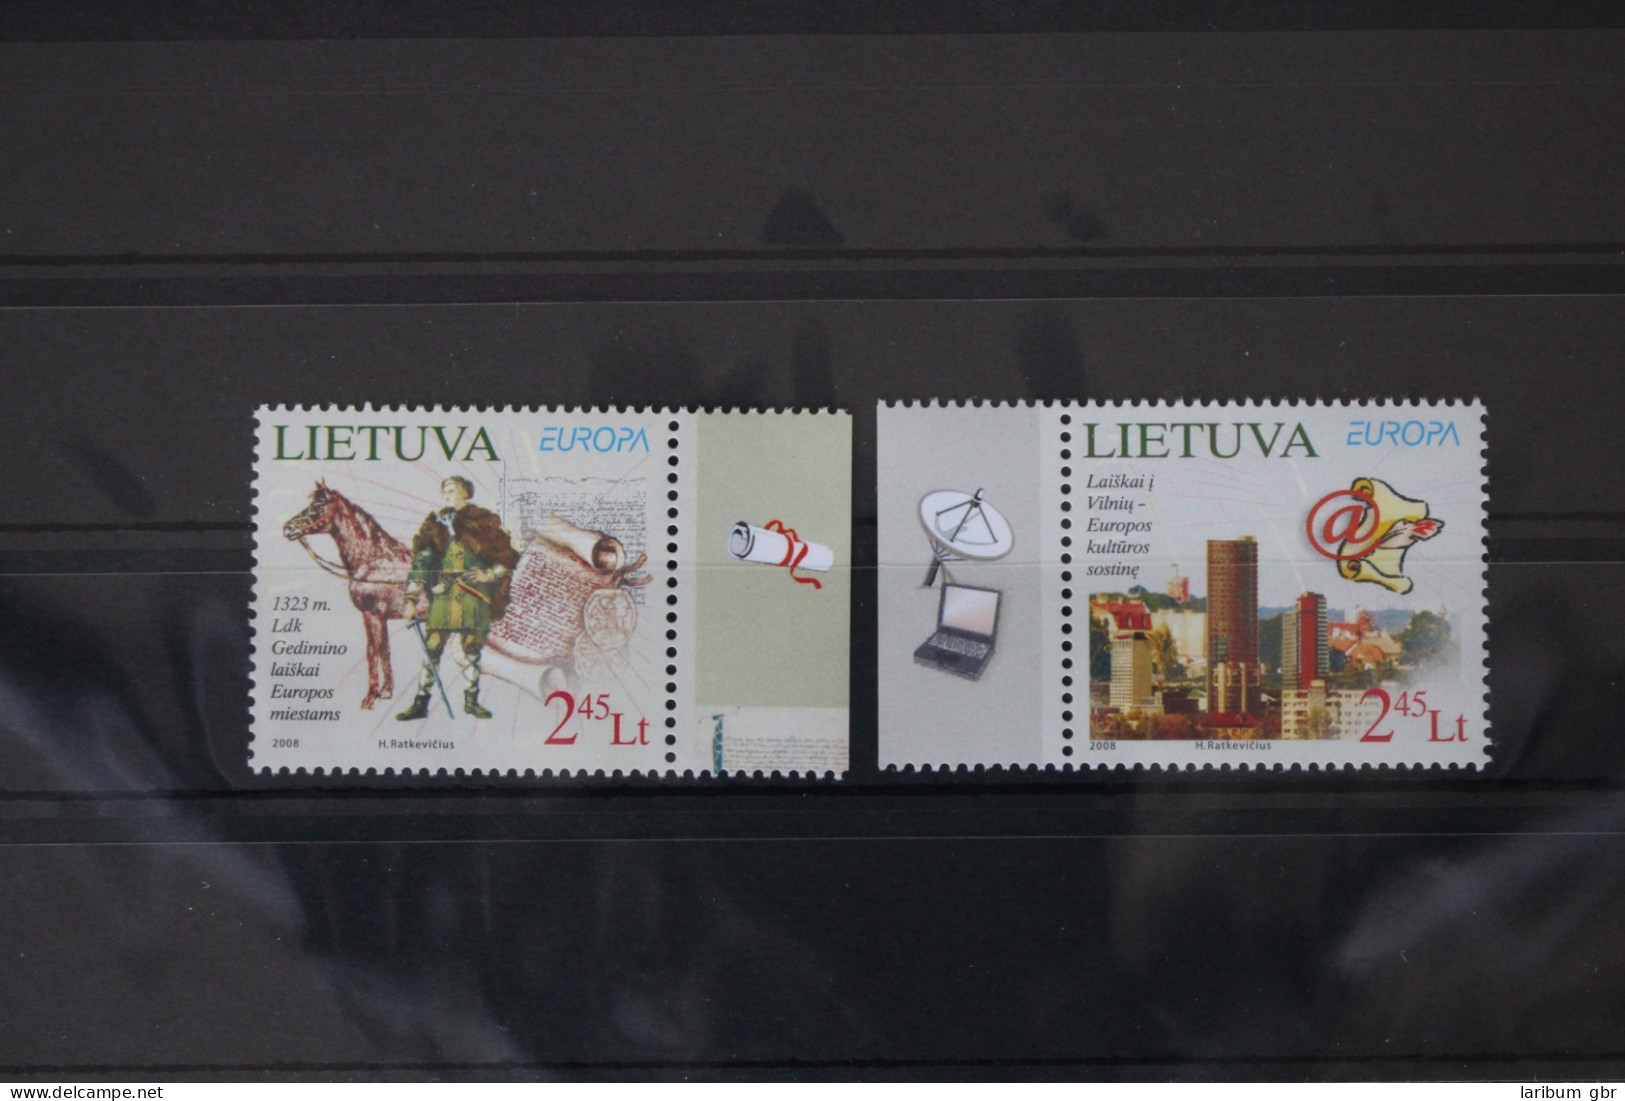 Litauen 970-971 Postfrisch Europa Der Brief #VR966 - Lituanie